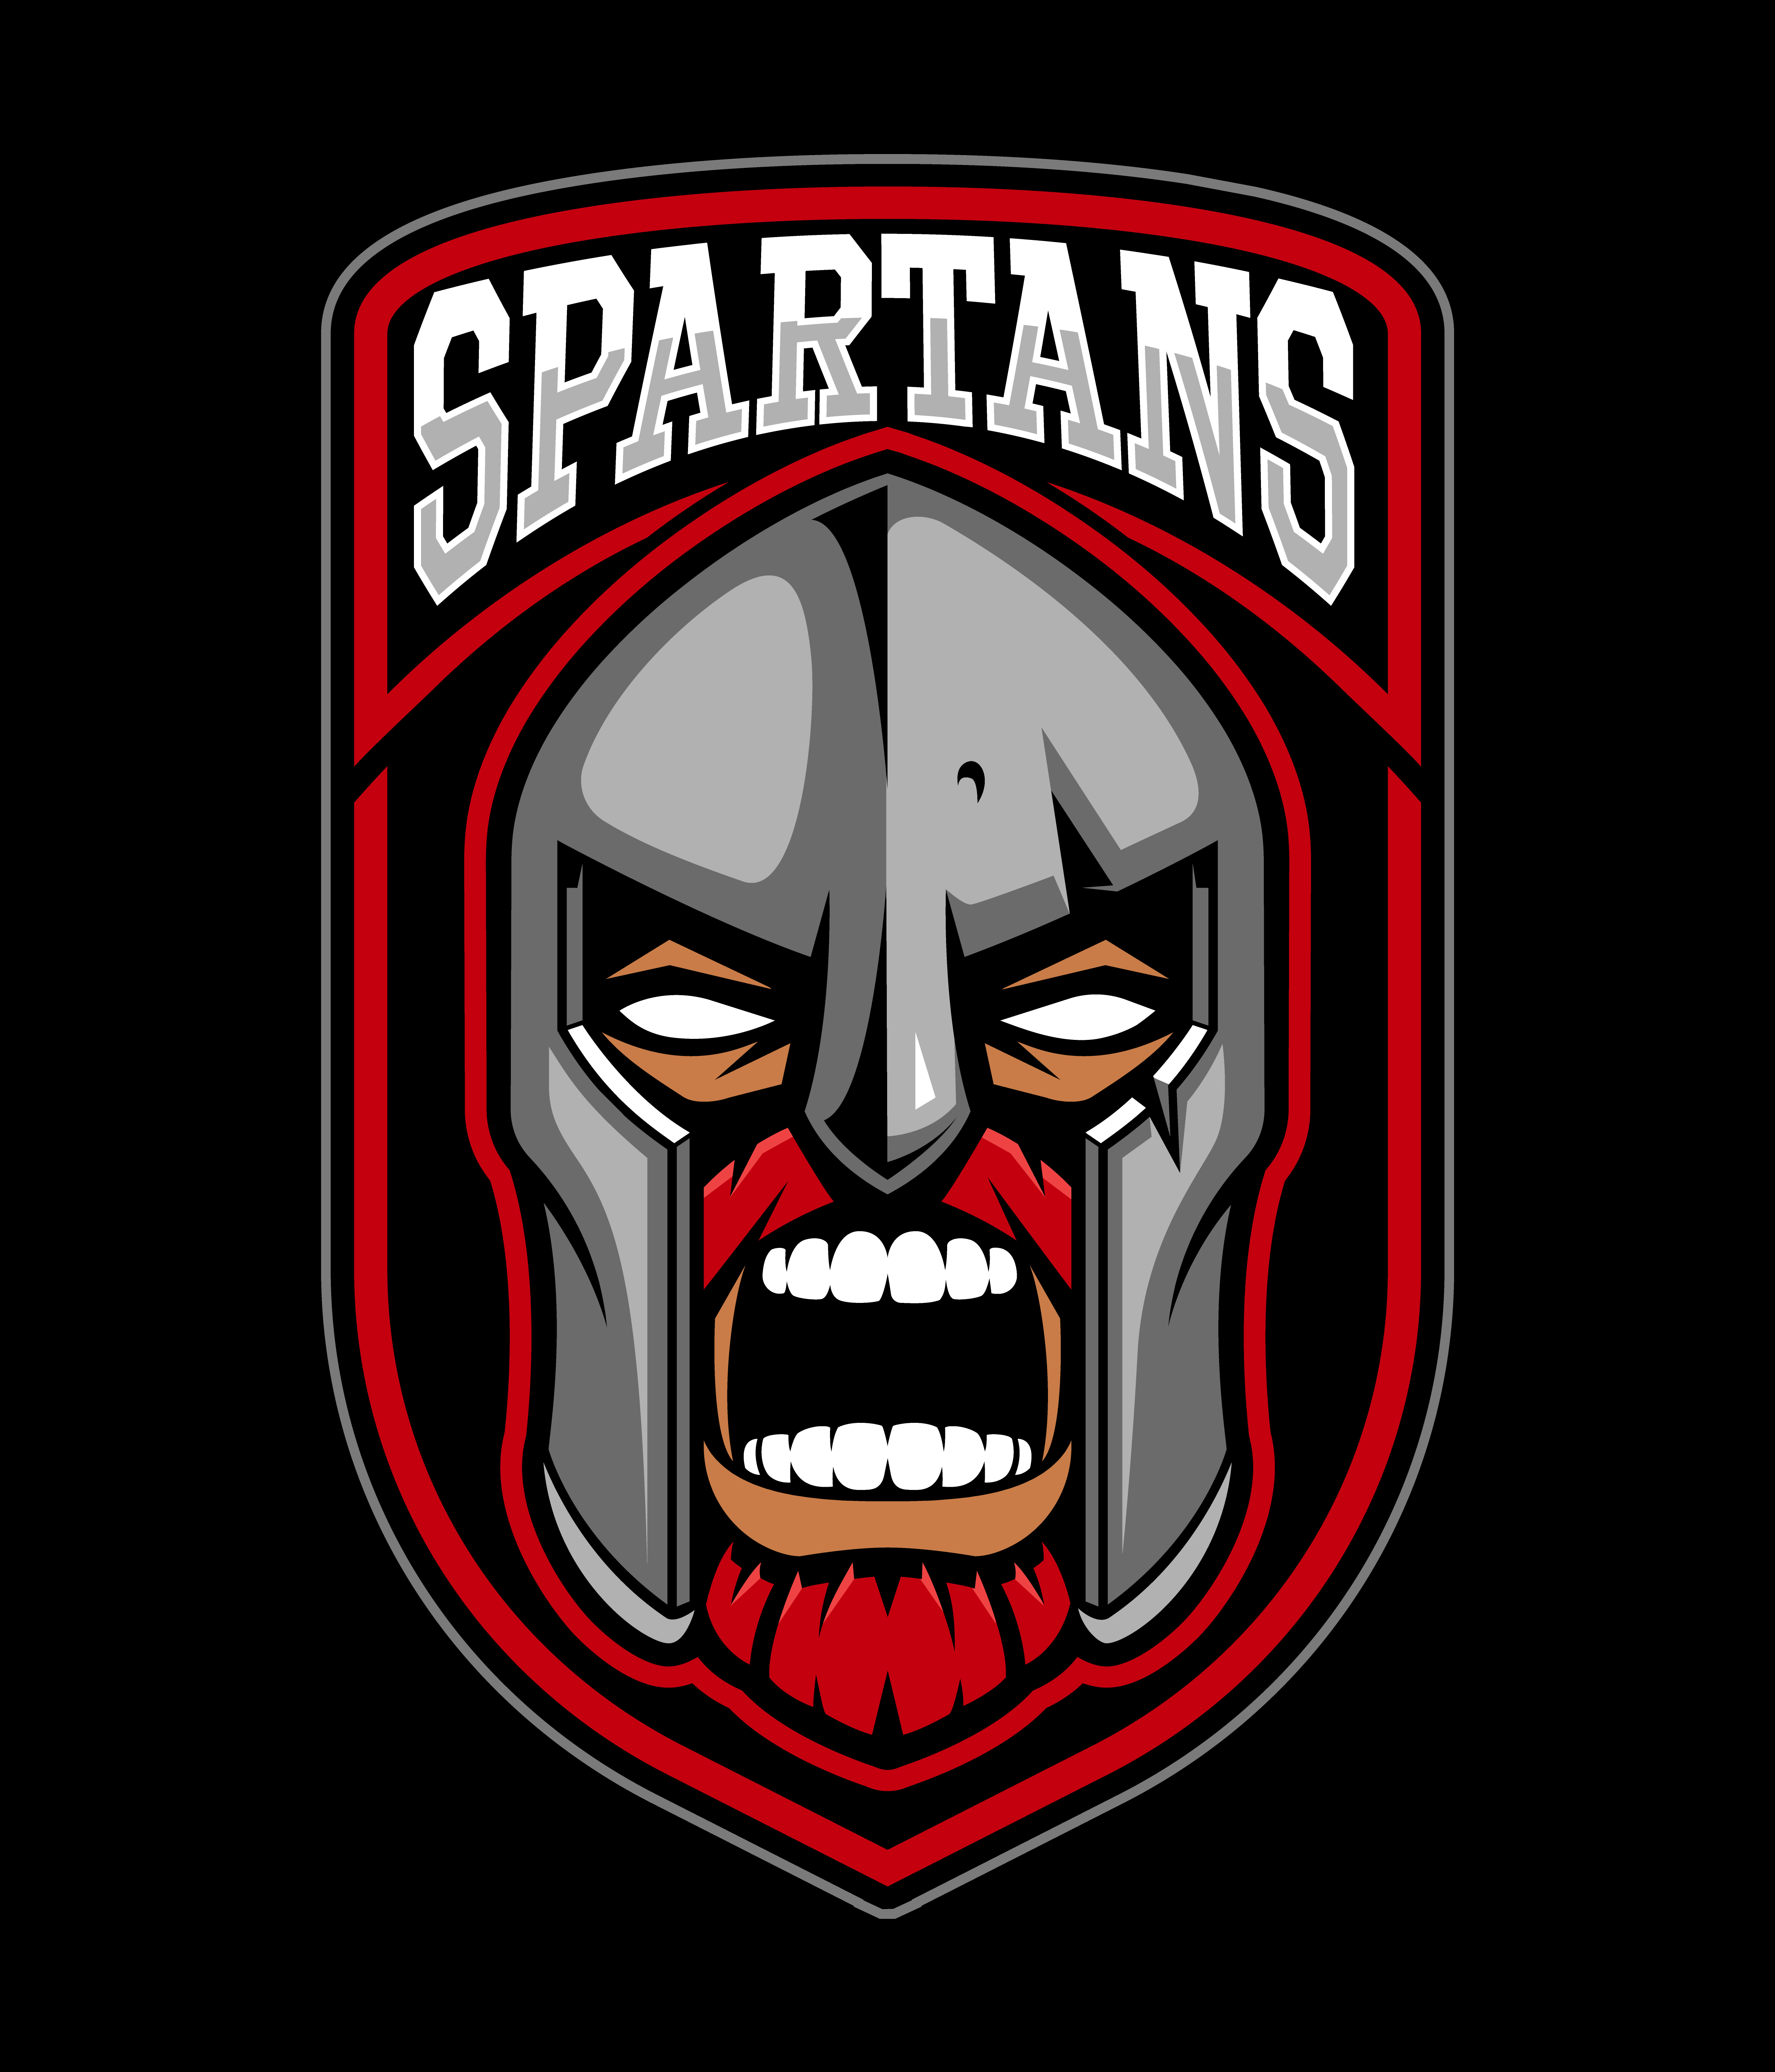 Spartan warrior logo design. 539198 Vector Art at Vecteezy